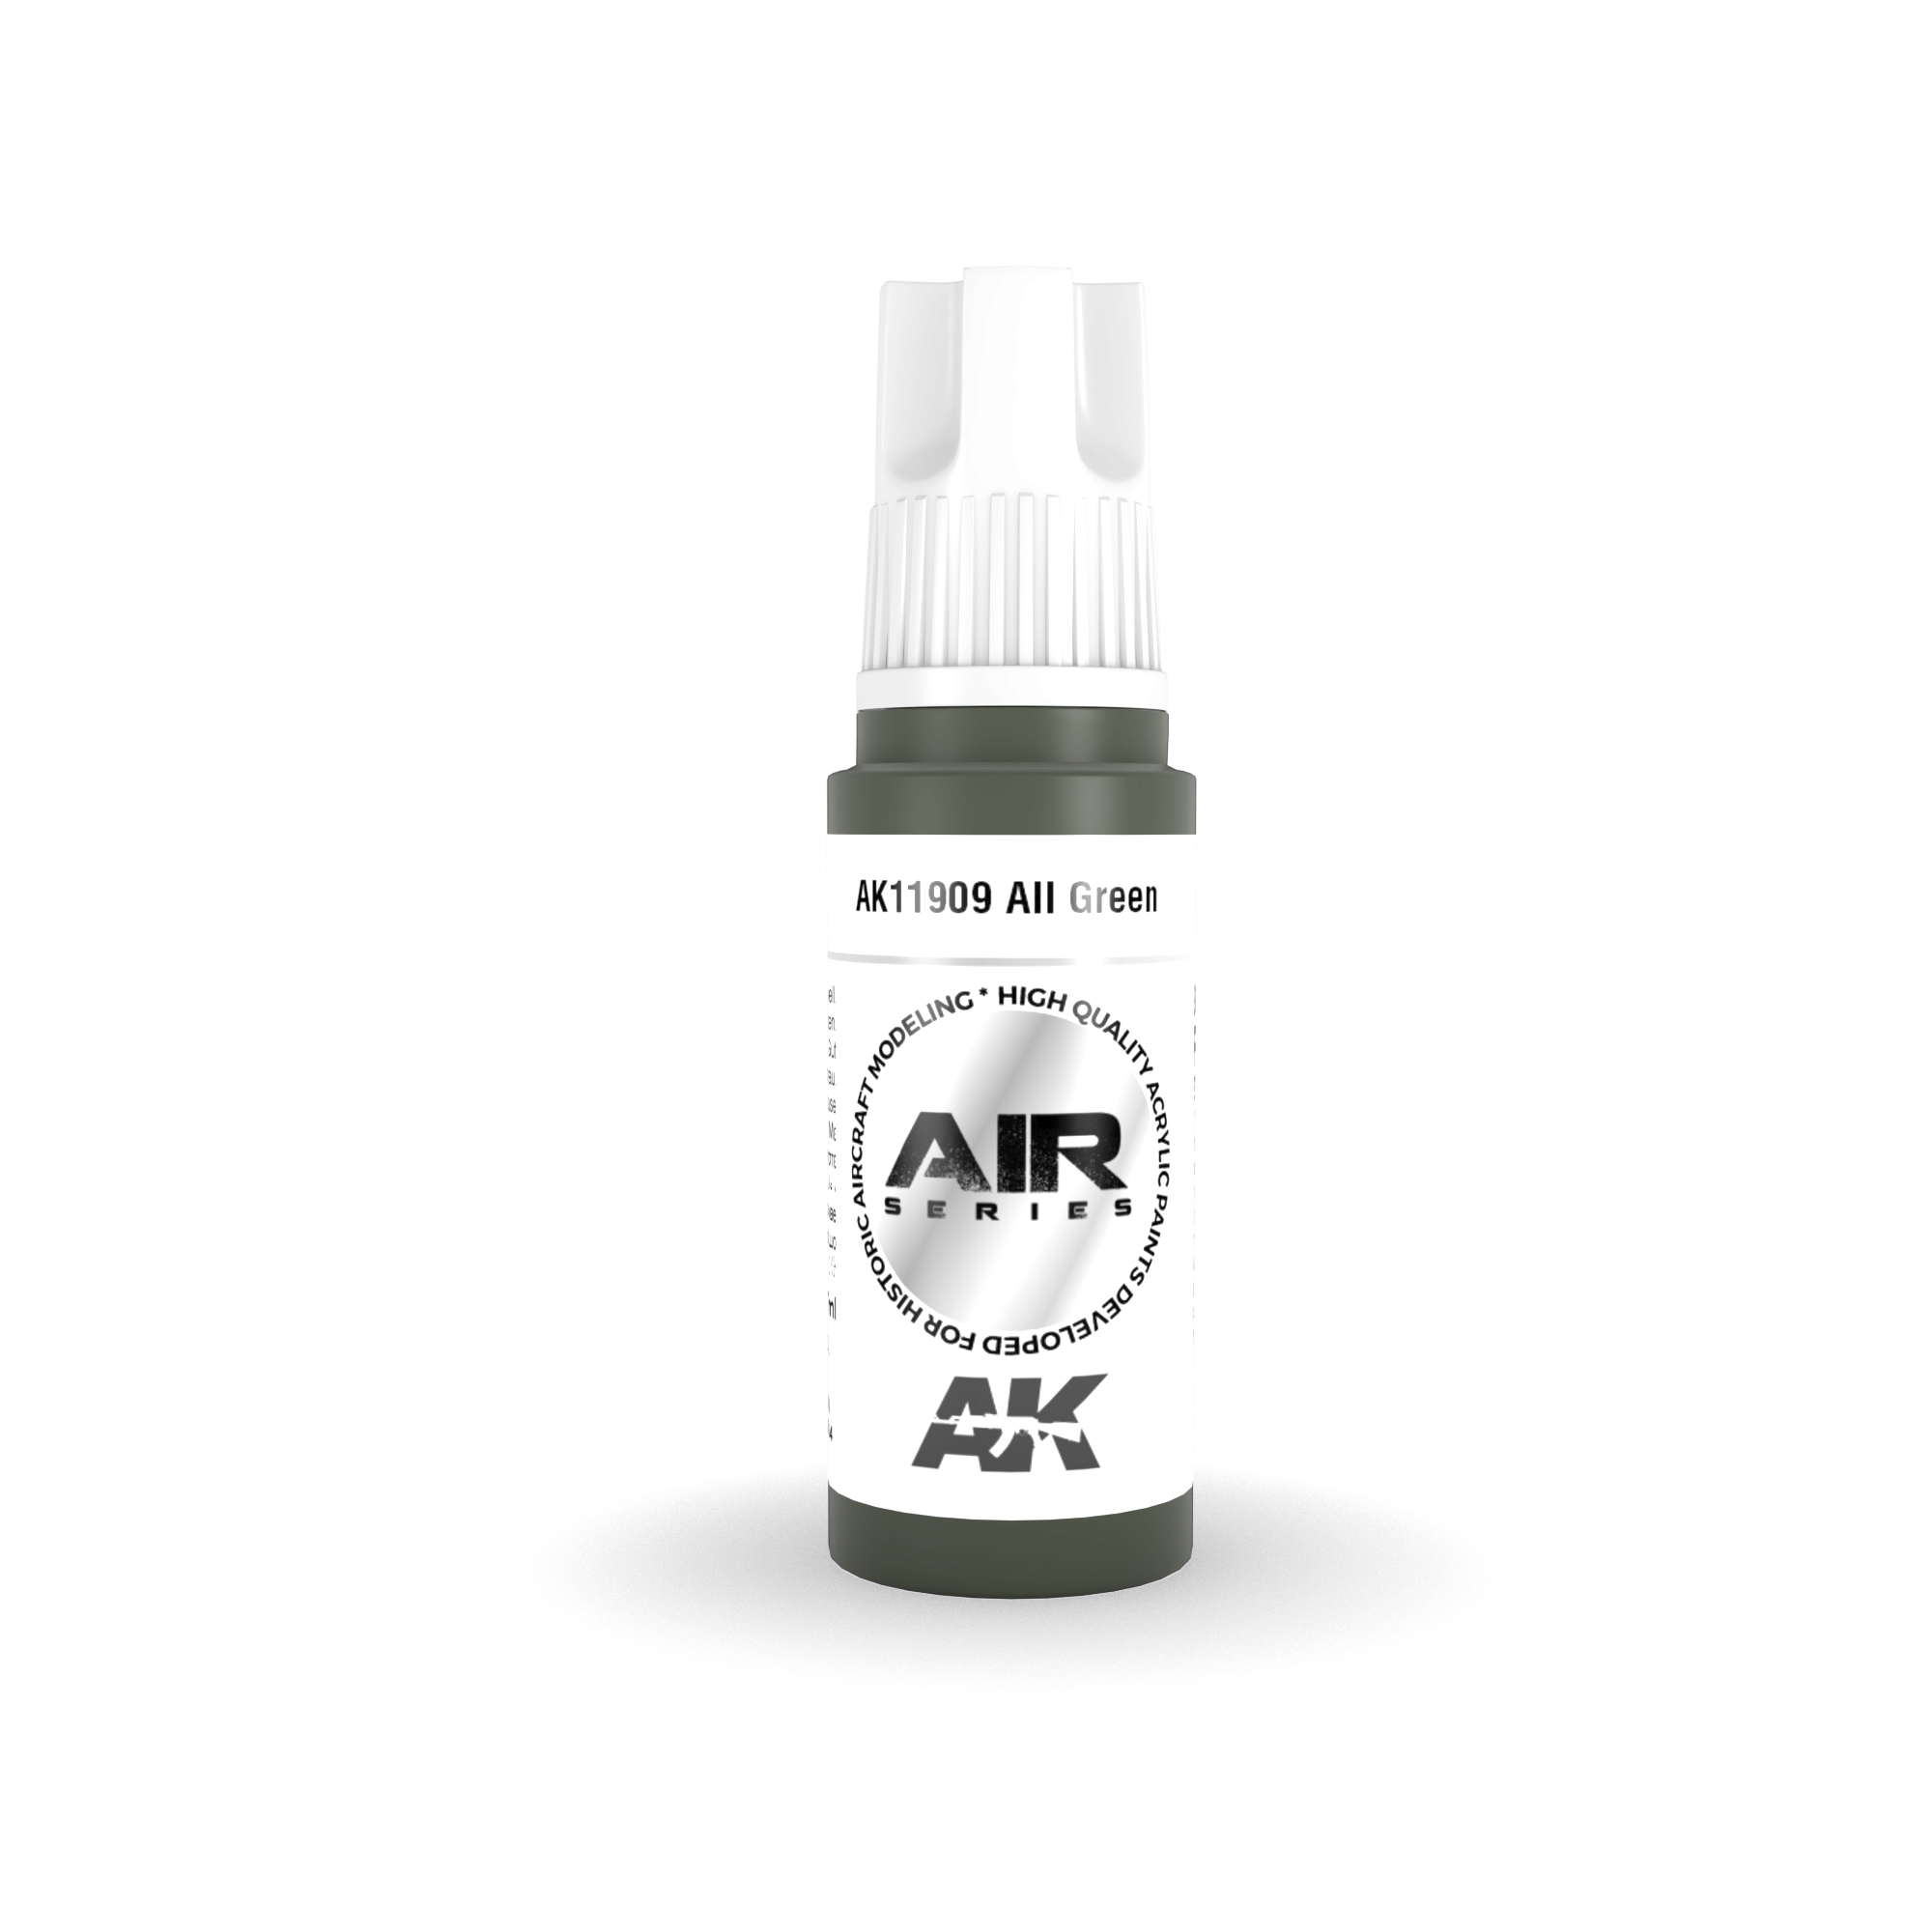 AK AK11909 3rd gen. AII Green